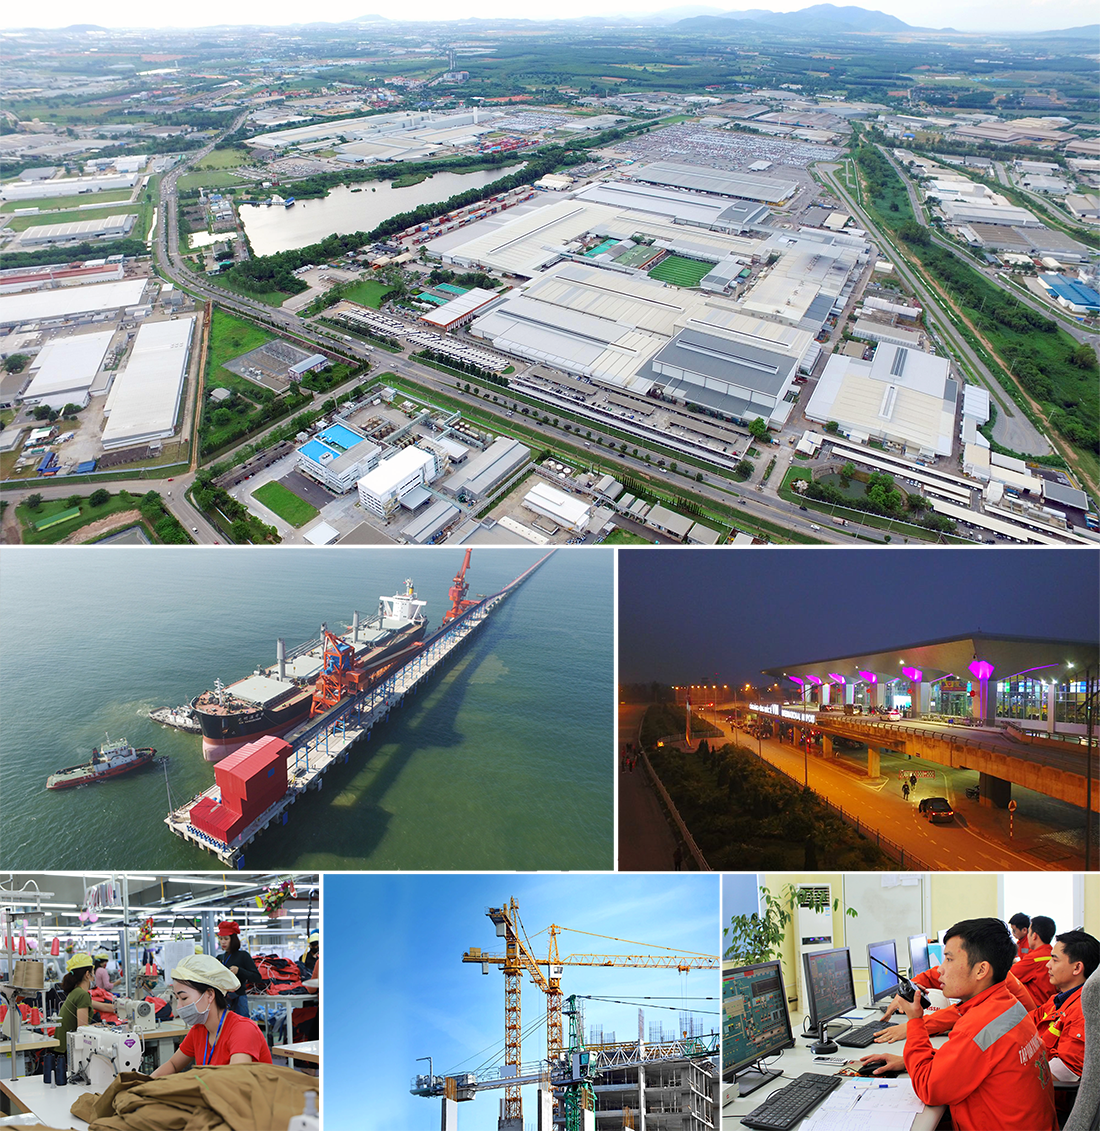 Công nghiệp - xây dựng và dịch vụ chiếm tỷ trọng cao trong phát triển kinh tế ở Nghệ An.